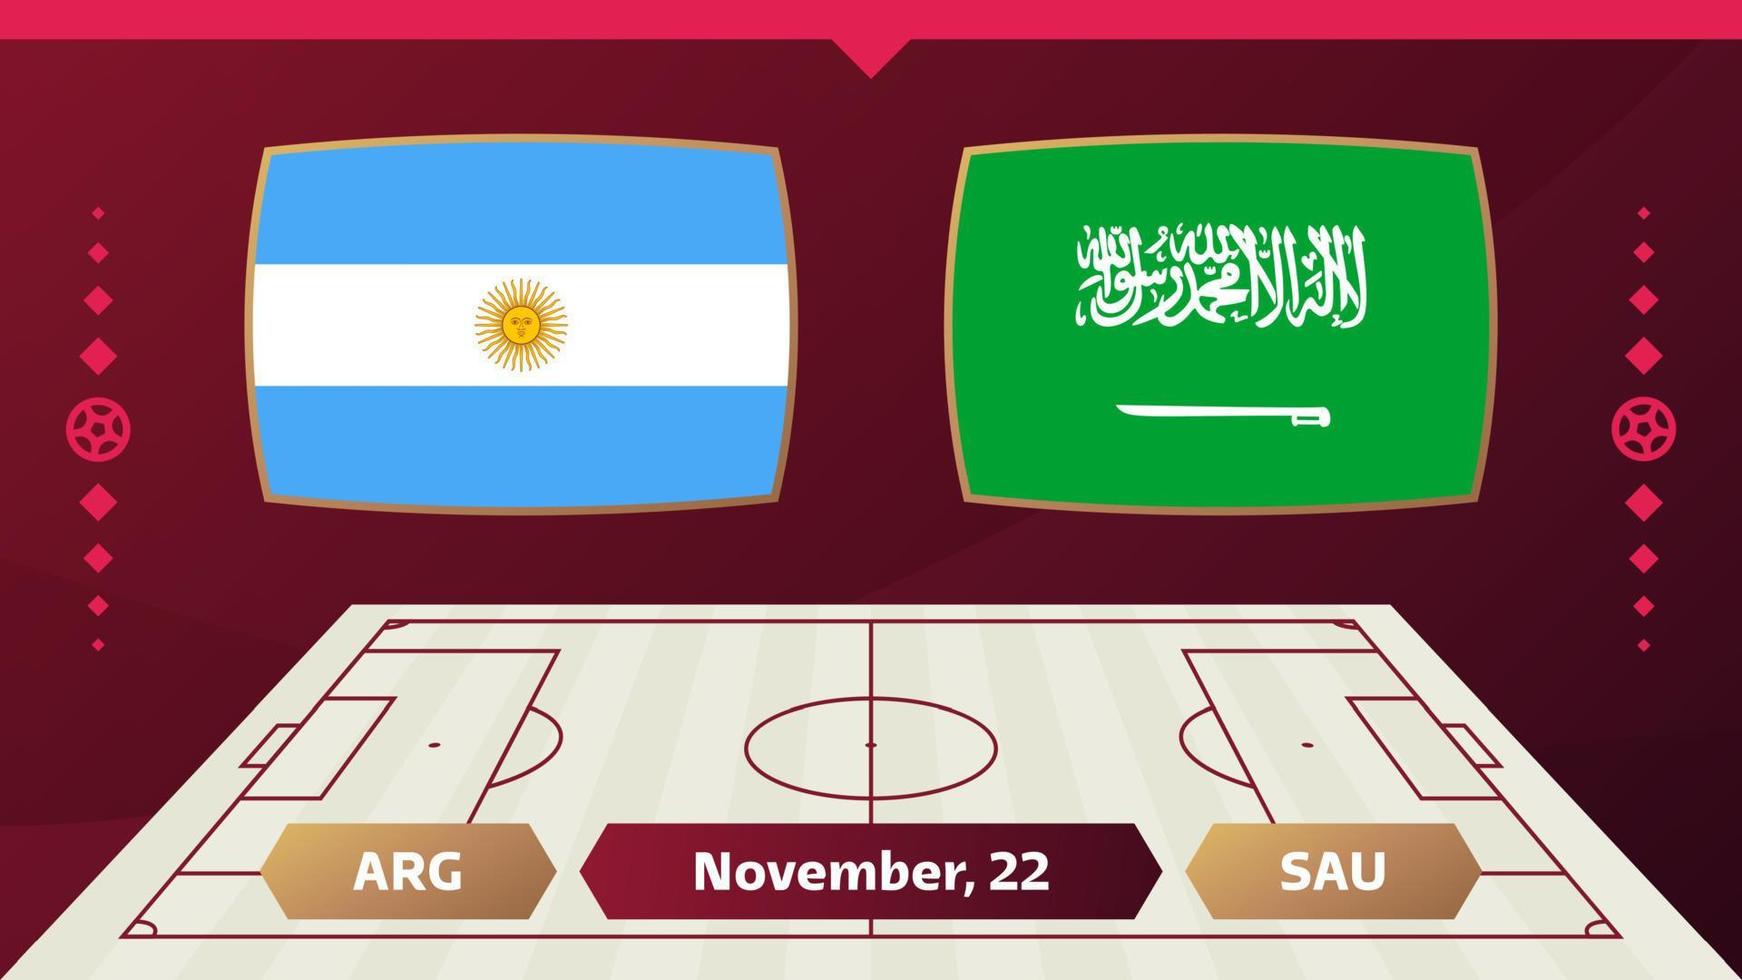 Argentinien gegen Saudi-Arabien, Fußball 2022, Gruppe c. Weltfußball-Meisterschaftsspiel gegen Team-Intro-Sporthintergrund, Endplakat des Meisterschaftswettbewerbs, Vektorillustration. vektor